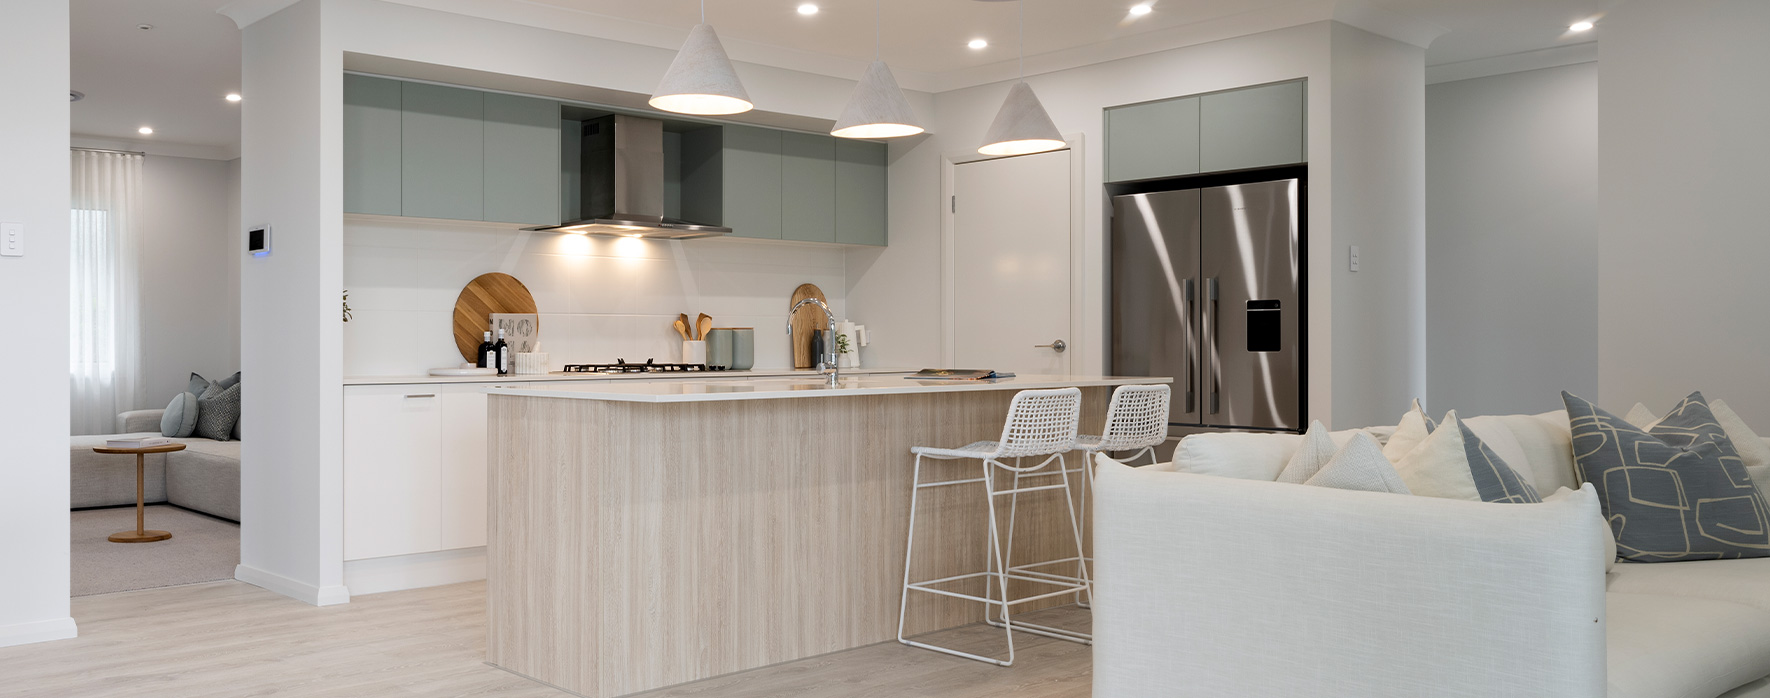 kiama-24-single-storey-display-home-kitchen